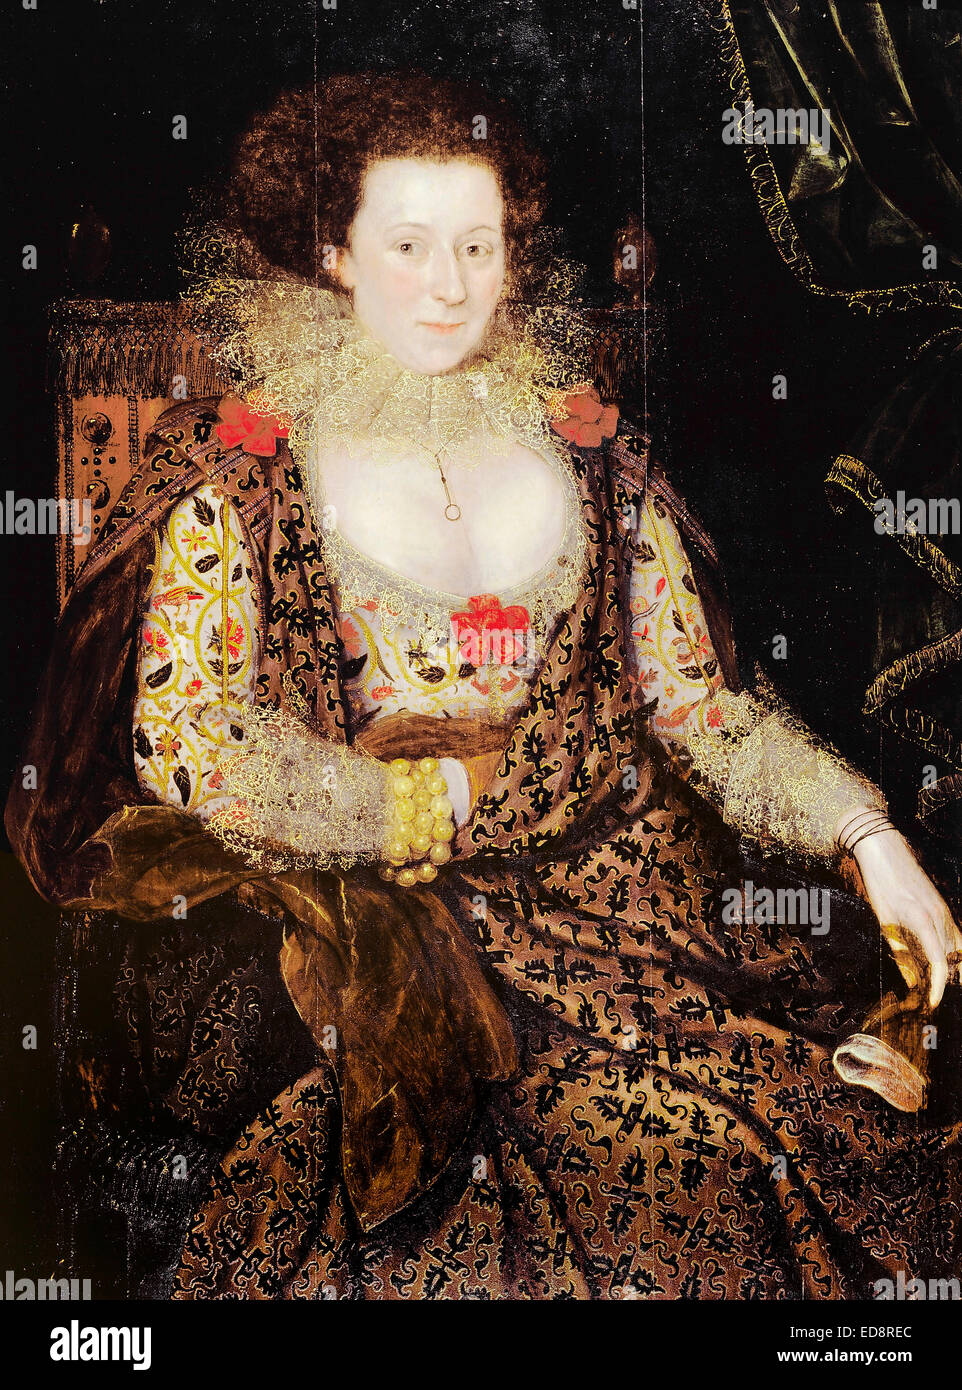 Marcus der jüngeren Gheeraerts, Bildnis einer Dame. Ca. 1615-1618. Öl auf Holz. Dulwich Picture Gallery, London, England. Stockfoto